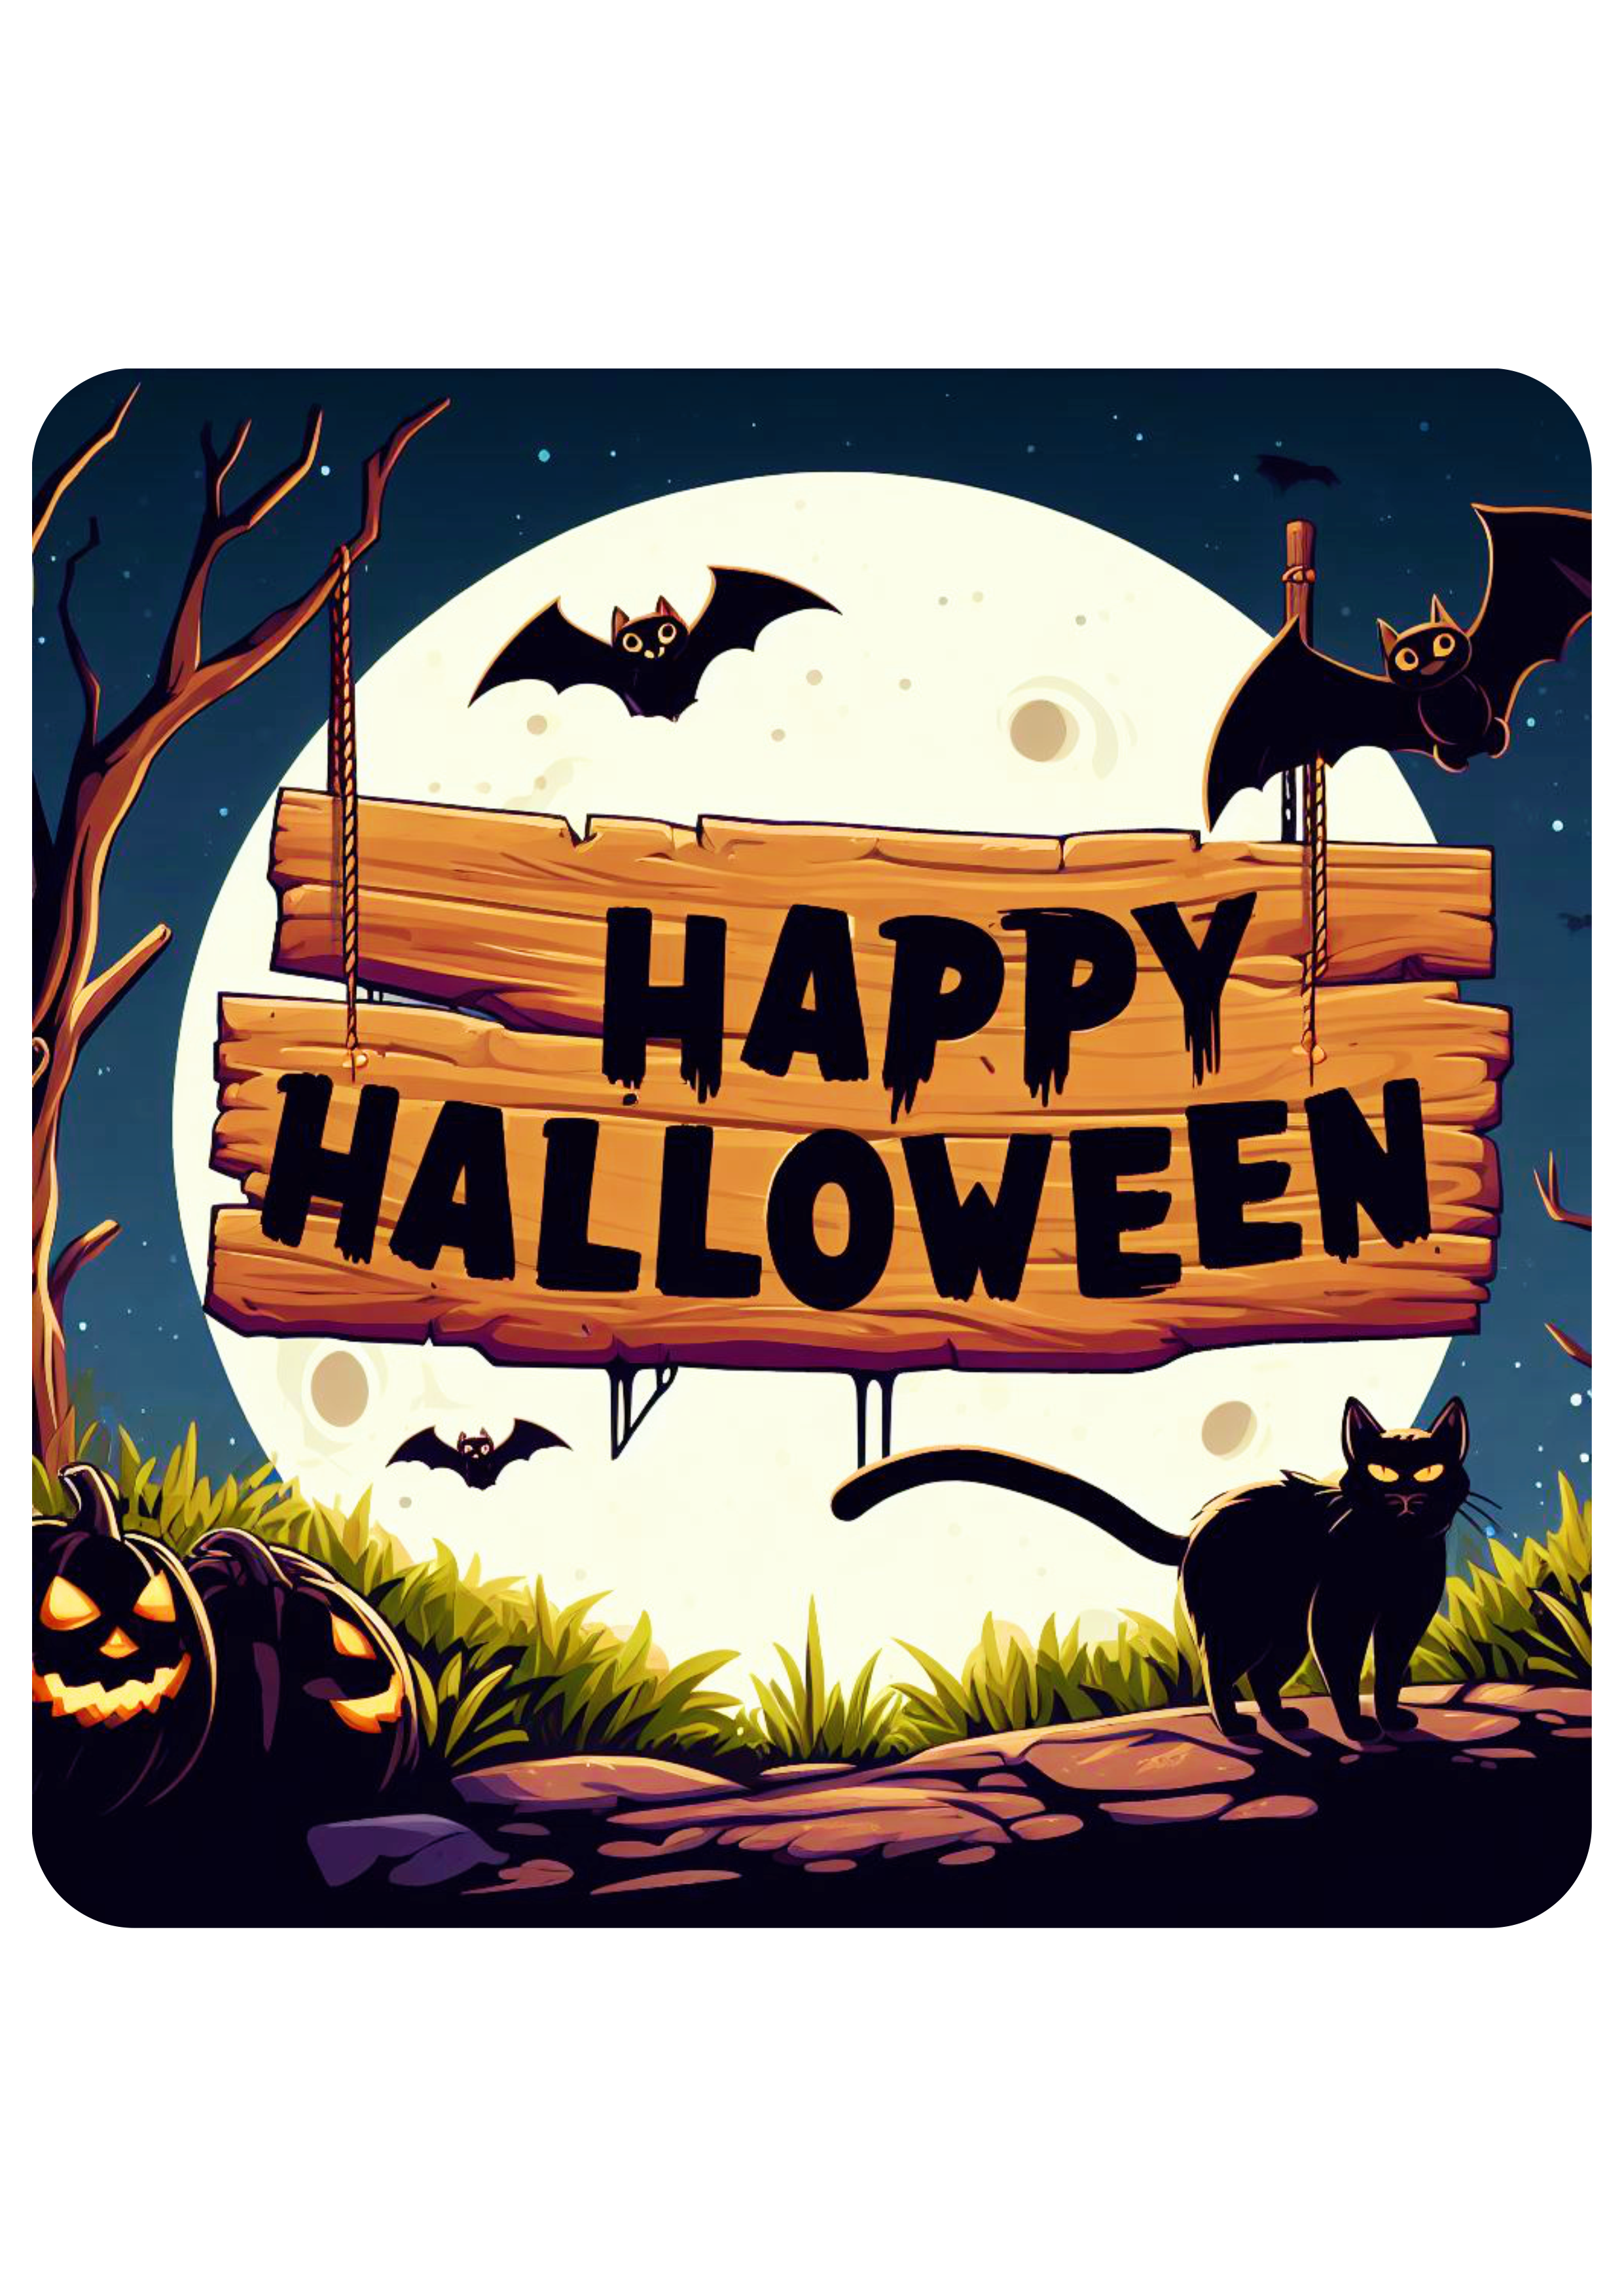 Happy Halloween estampa bonita noite de lua cheia assustadora dia das bruxas pronto para imprimir artes gráficas png